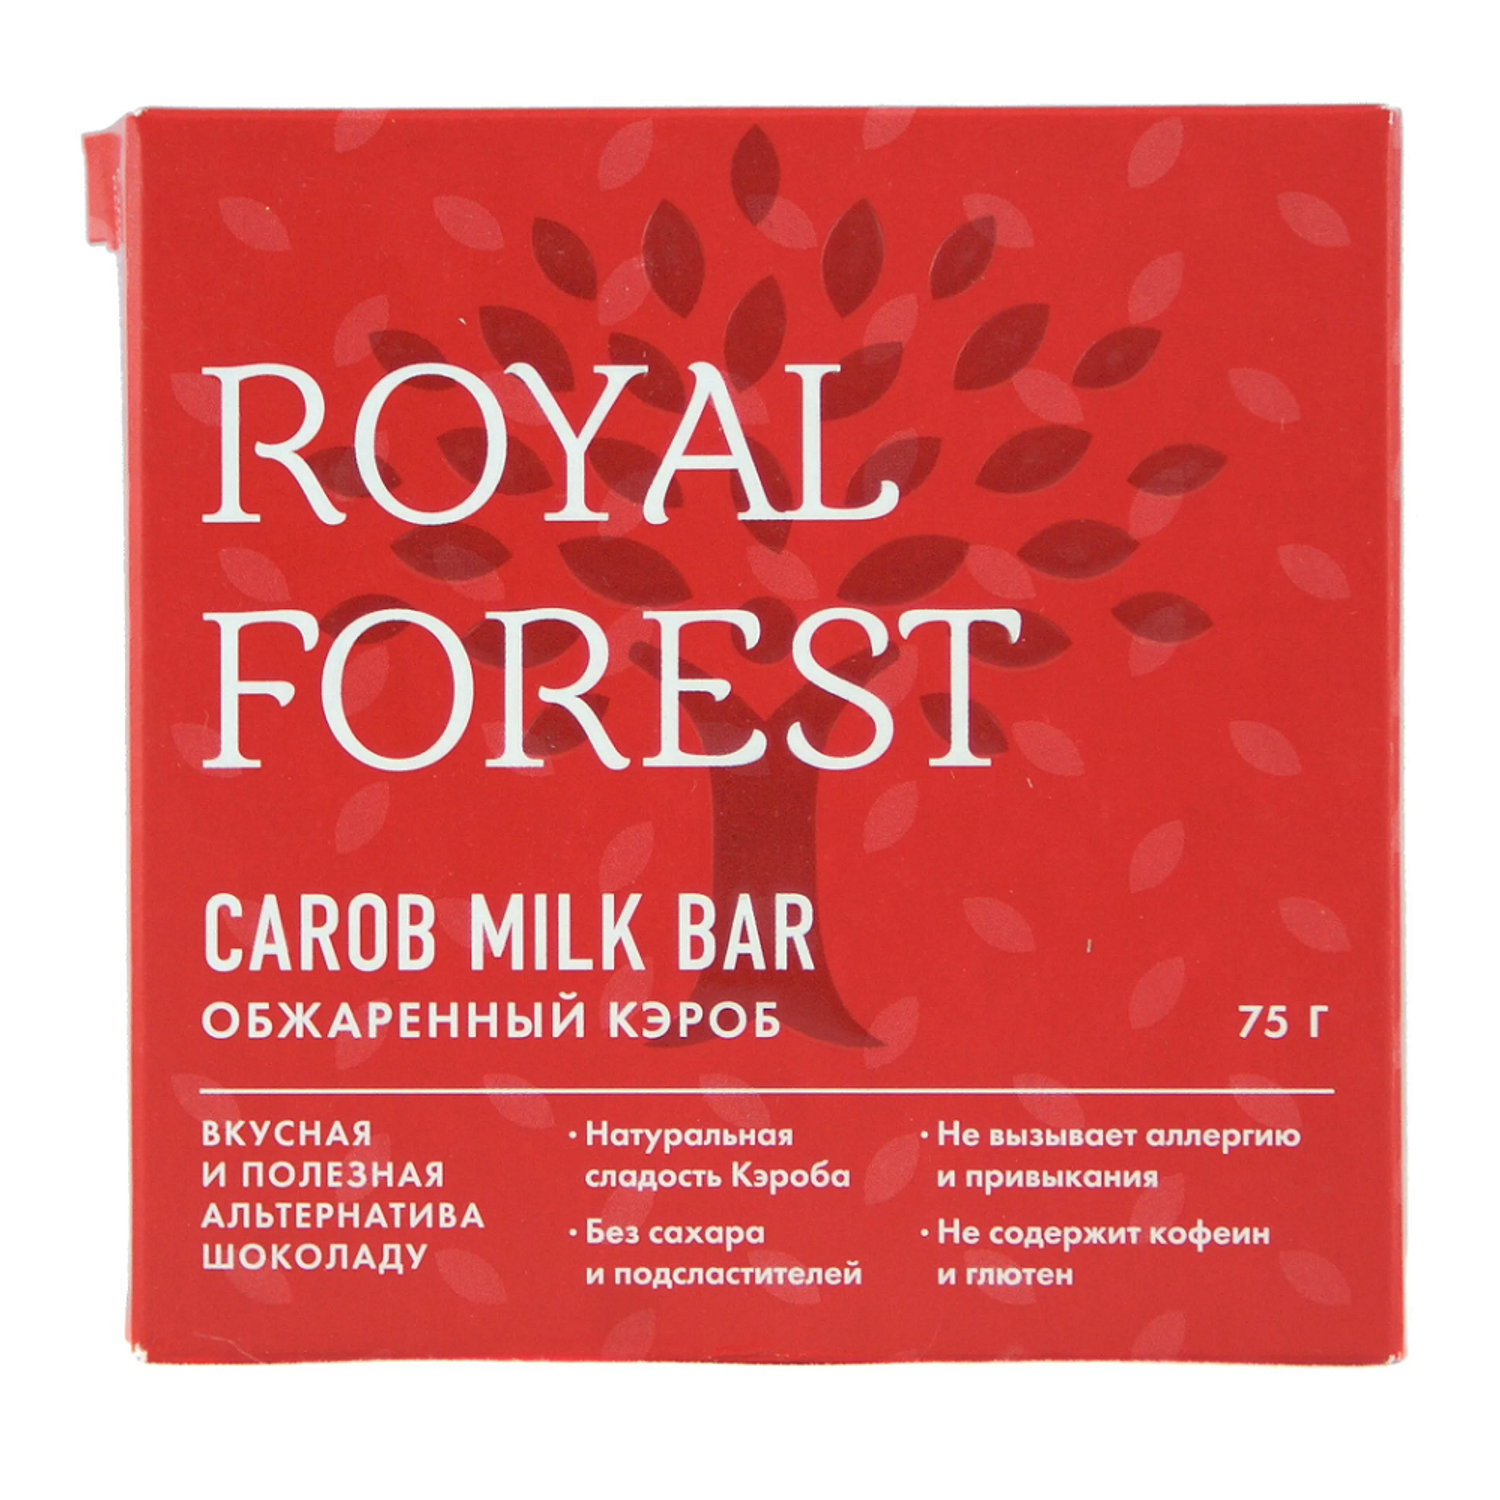 Плиточный шоколад ROYAL FOREST молочный из обжаренного кэроба 75 г - фото 1